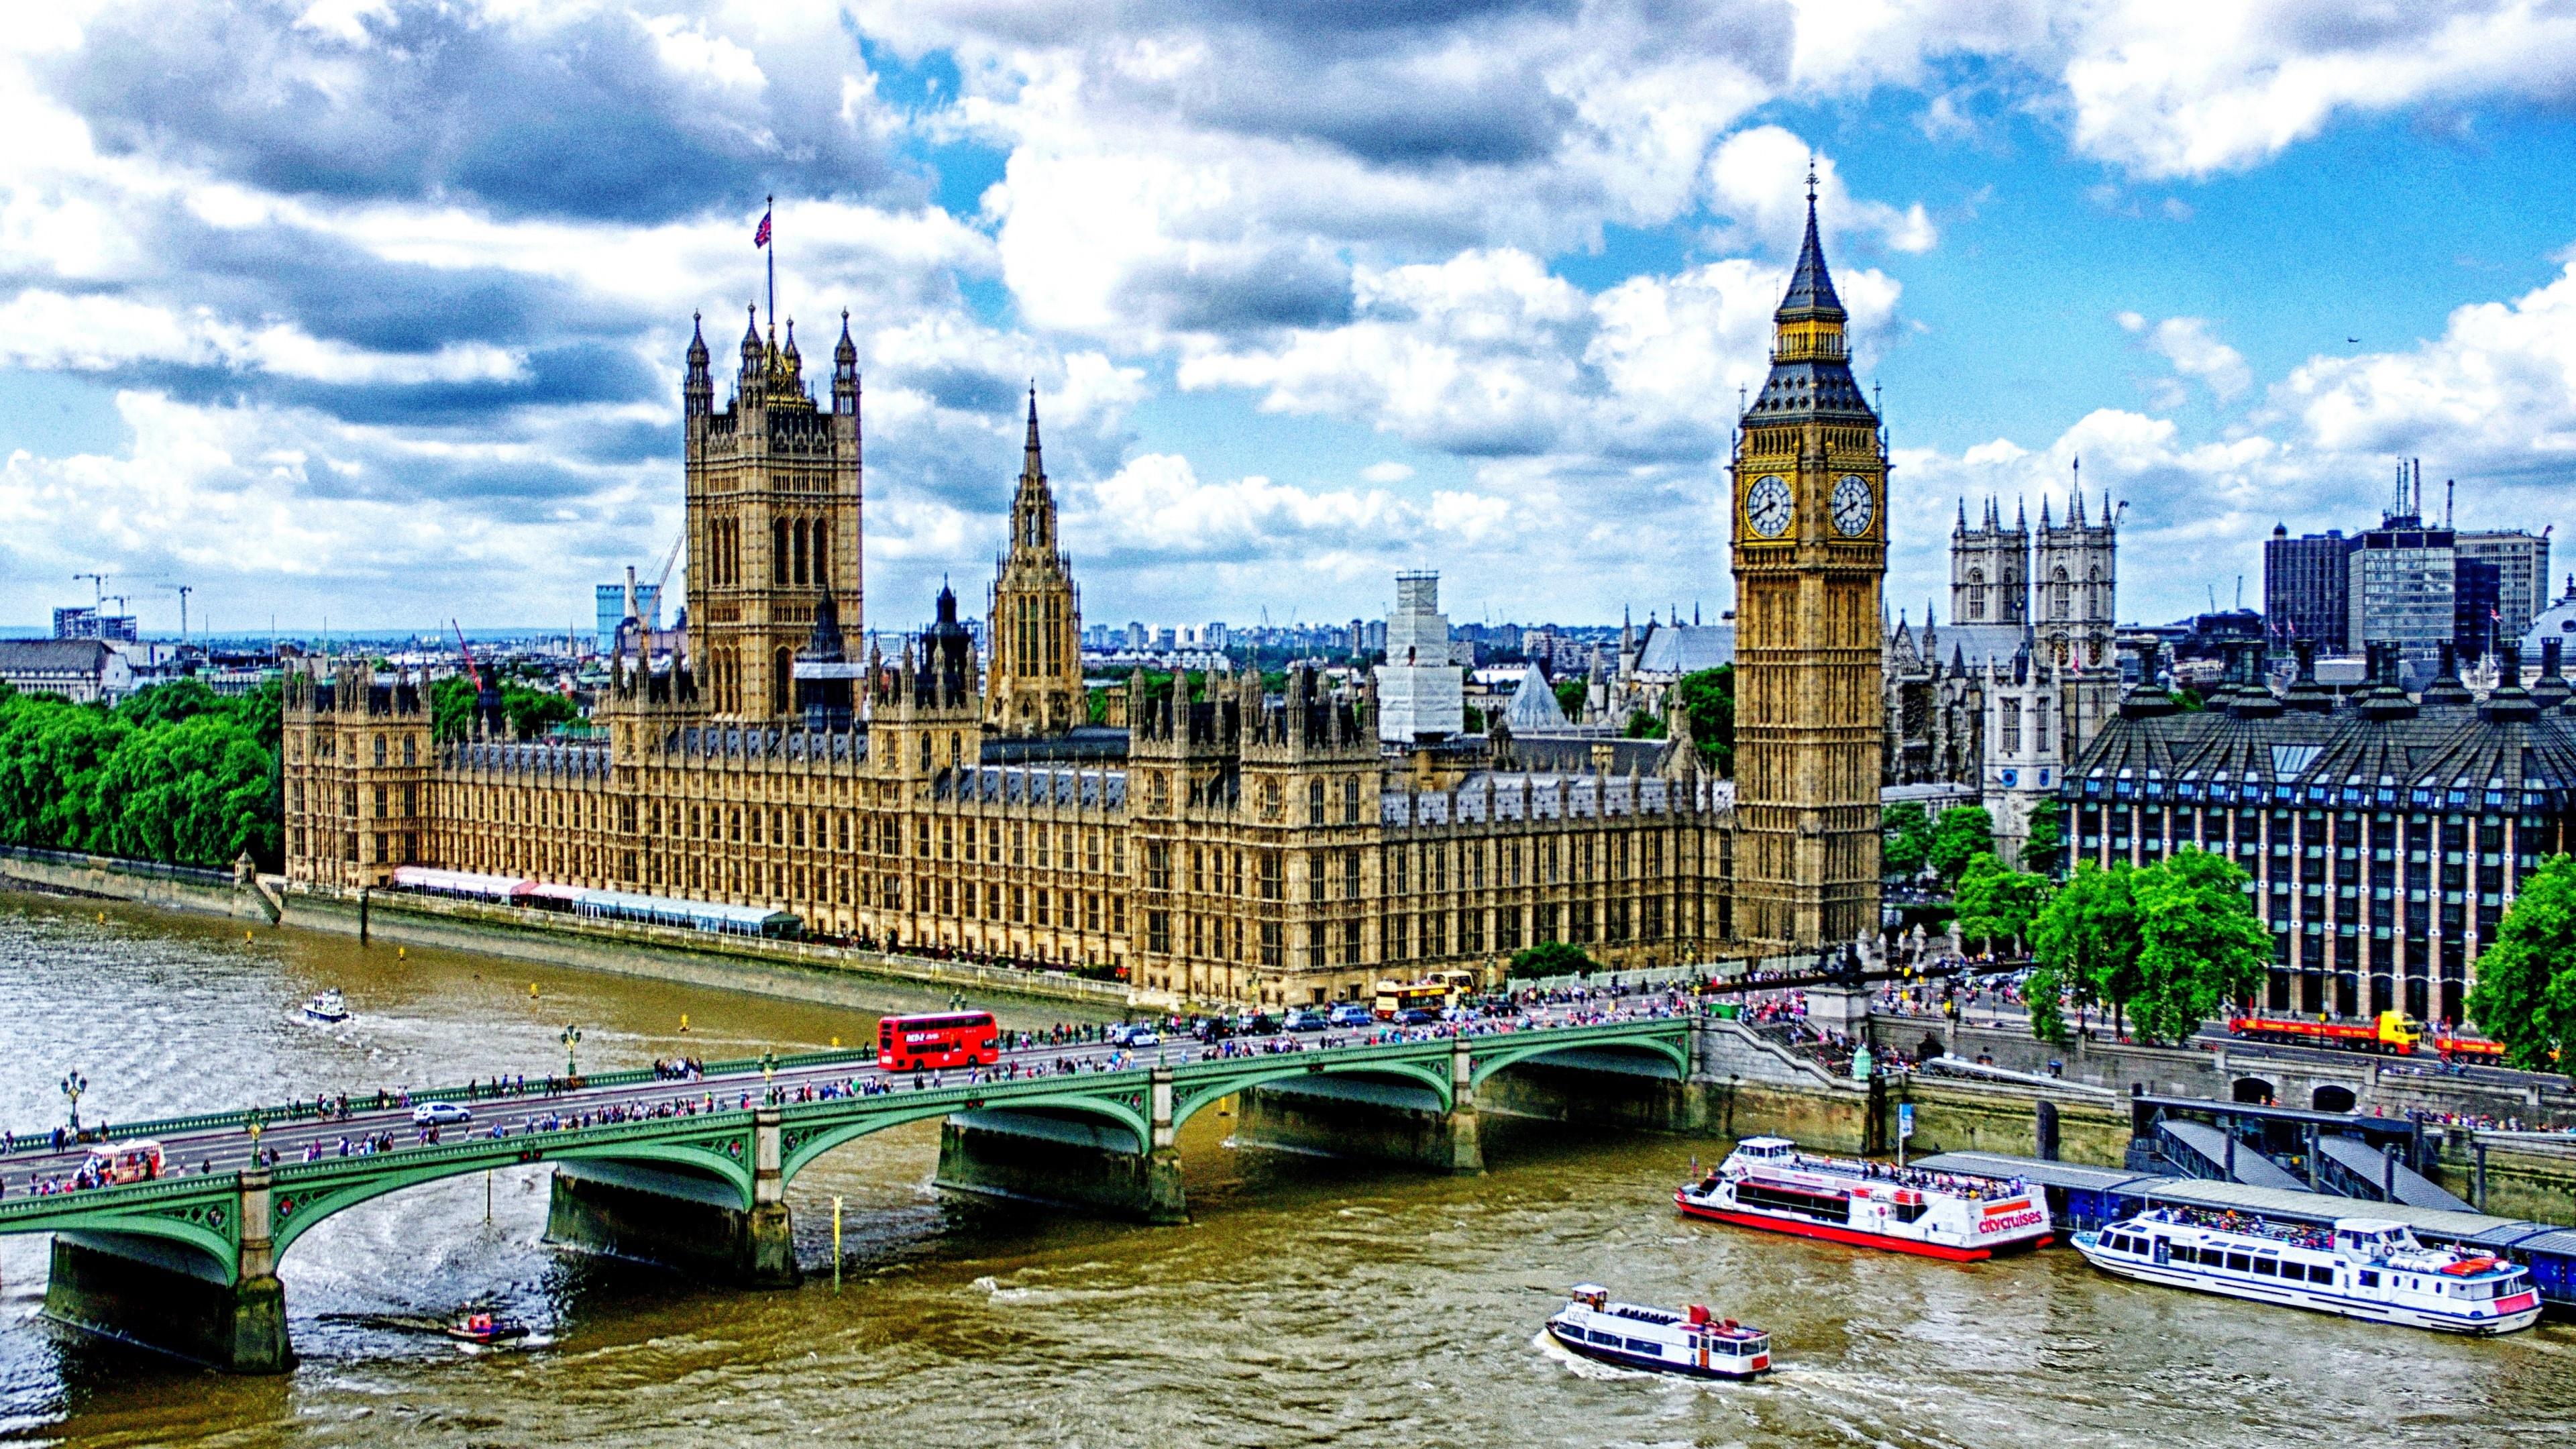 Westminster Bridge And Big Ben - London Wallpaper | Wallpaper Studio ...